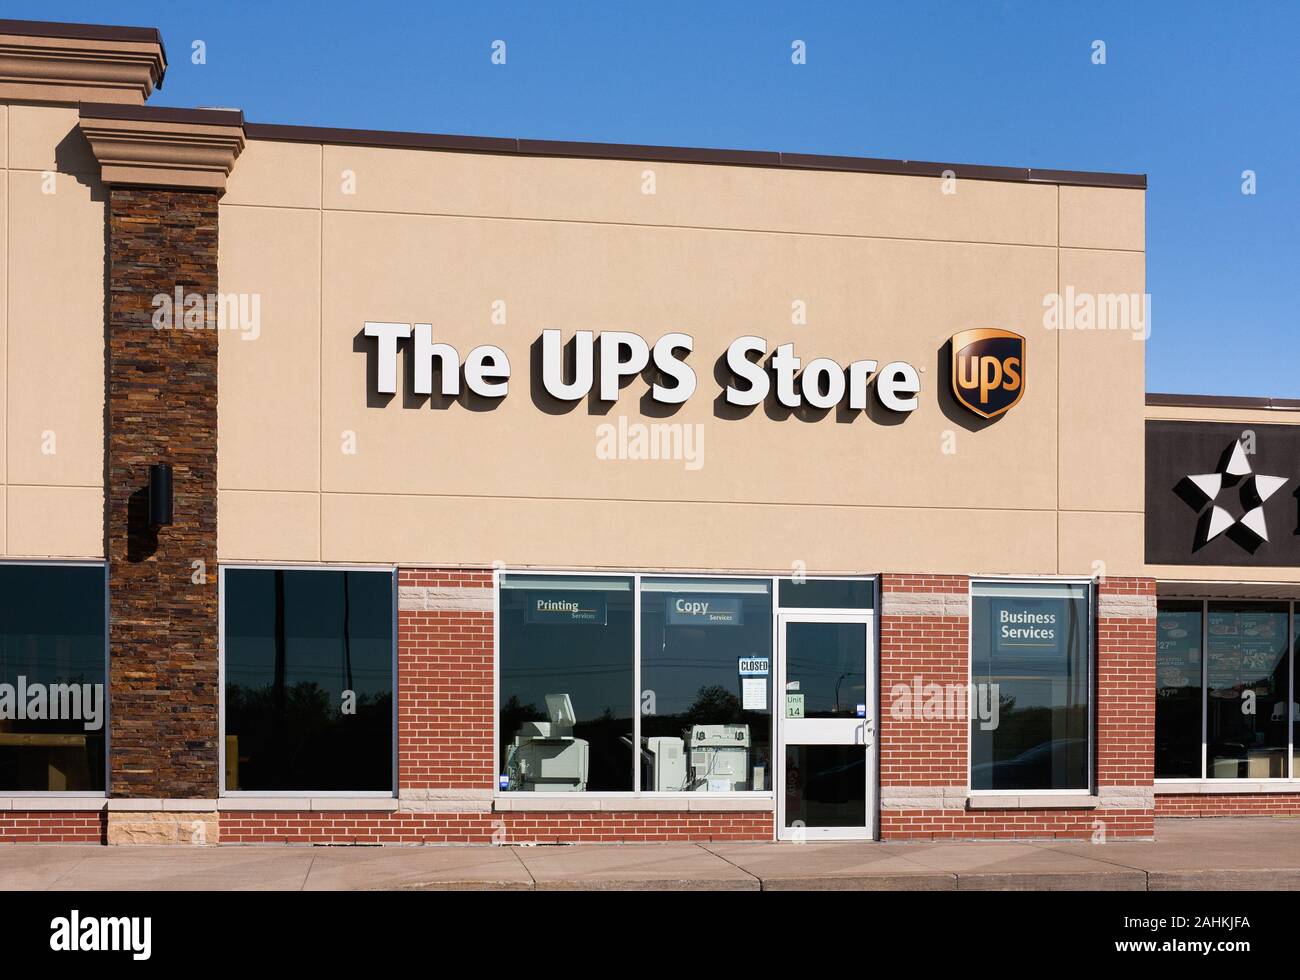 Halifax, Kanada - 11. Juni 2016: UPS Verkaufsplattform. United Parcel Service oder UPS ist eine US-amerikanische Lieferung global tätige Unternehmen. Stockfoto